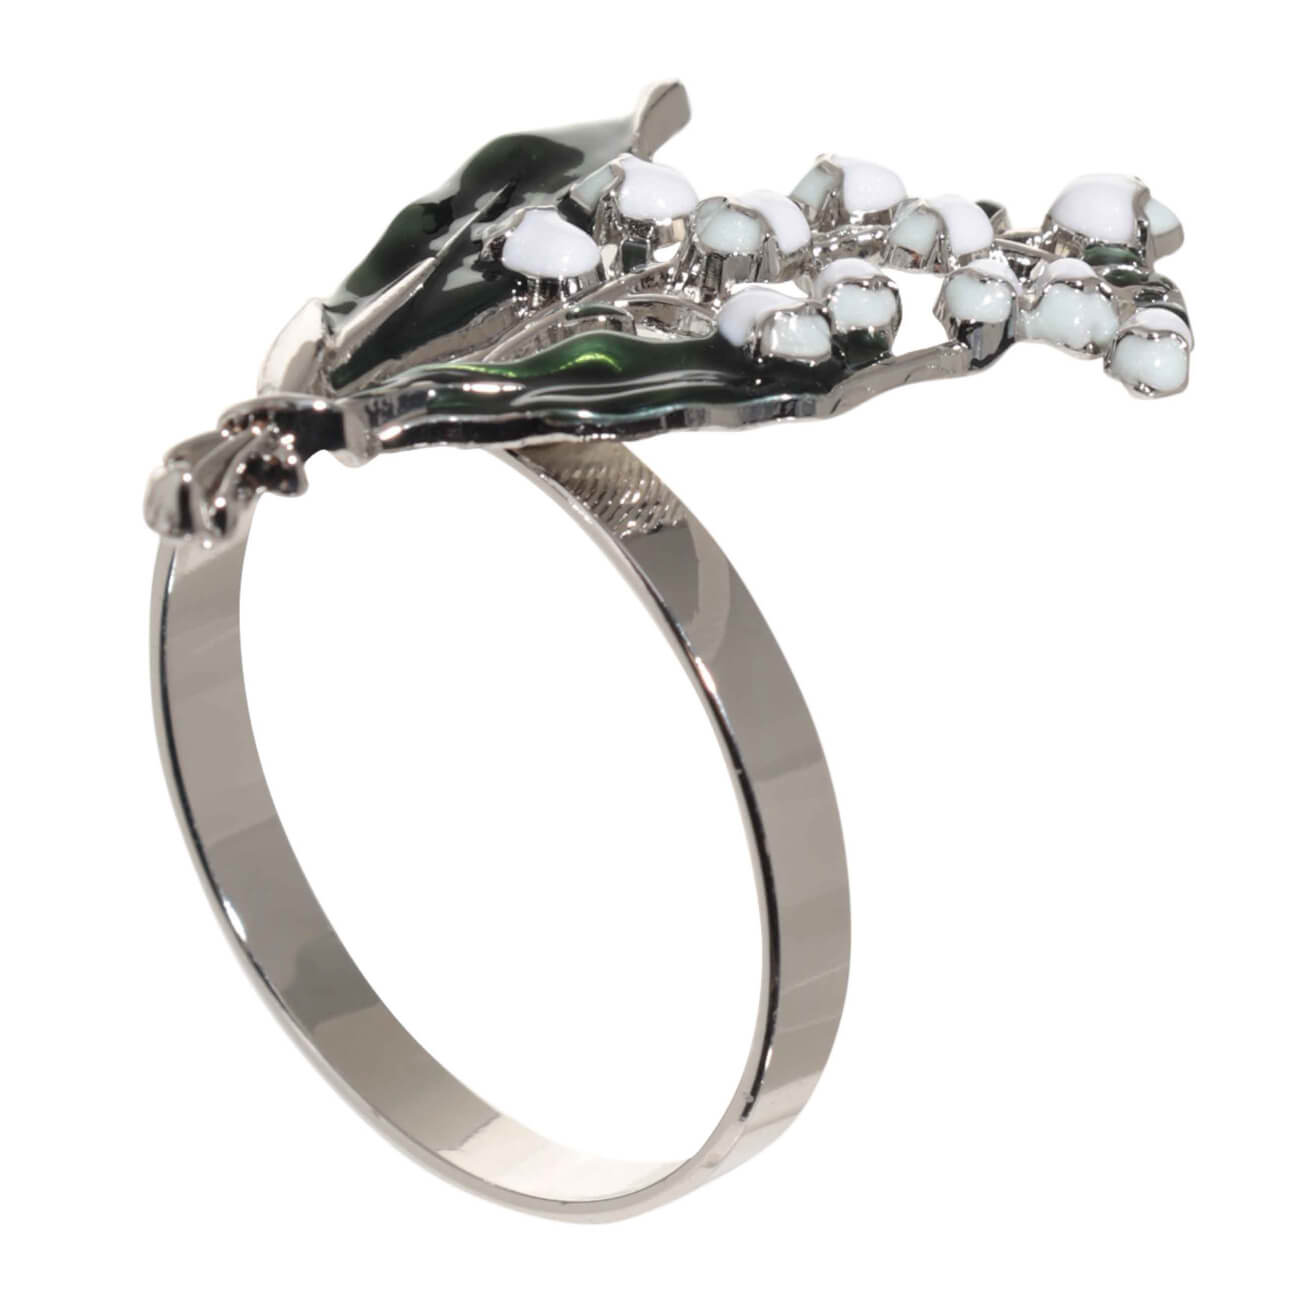 Кольцо для салфеток, 5 см, металл, зелено-серебристое, Ландыш с листьями, May-lily изображение № 1